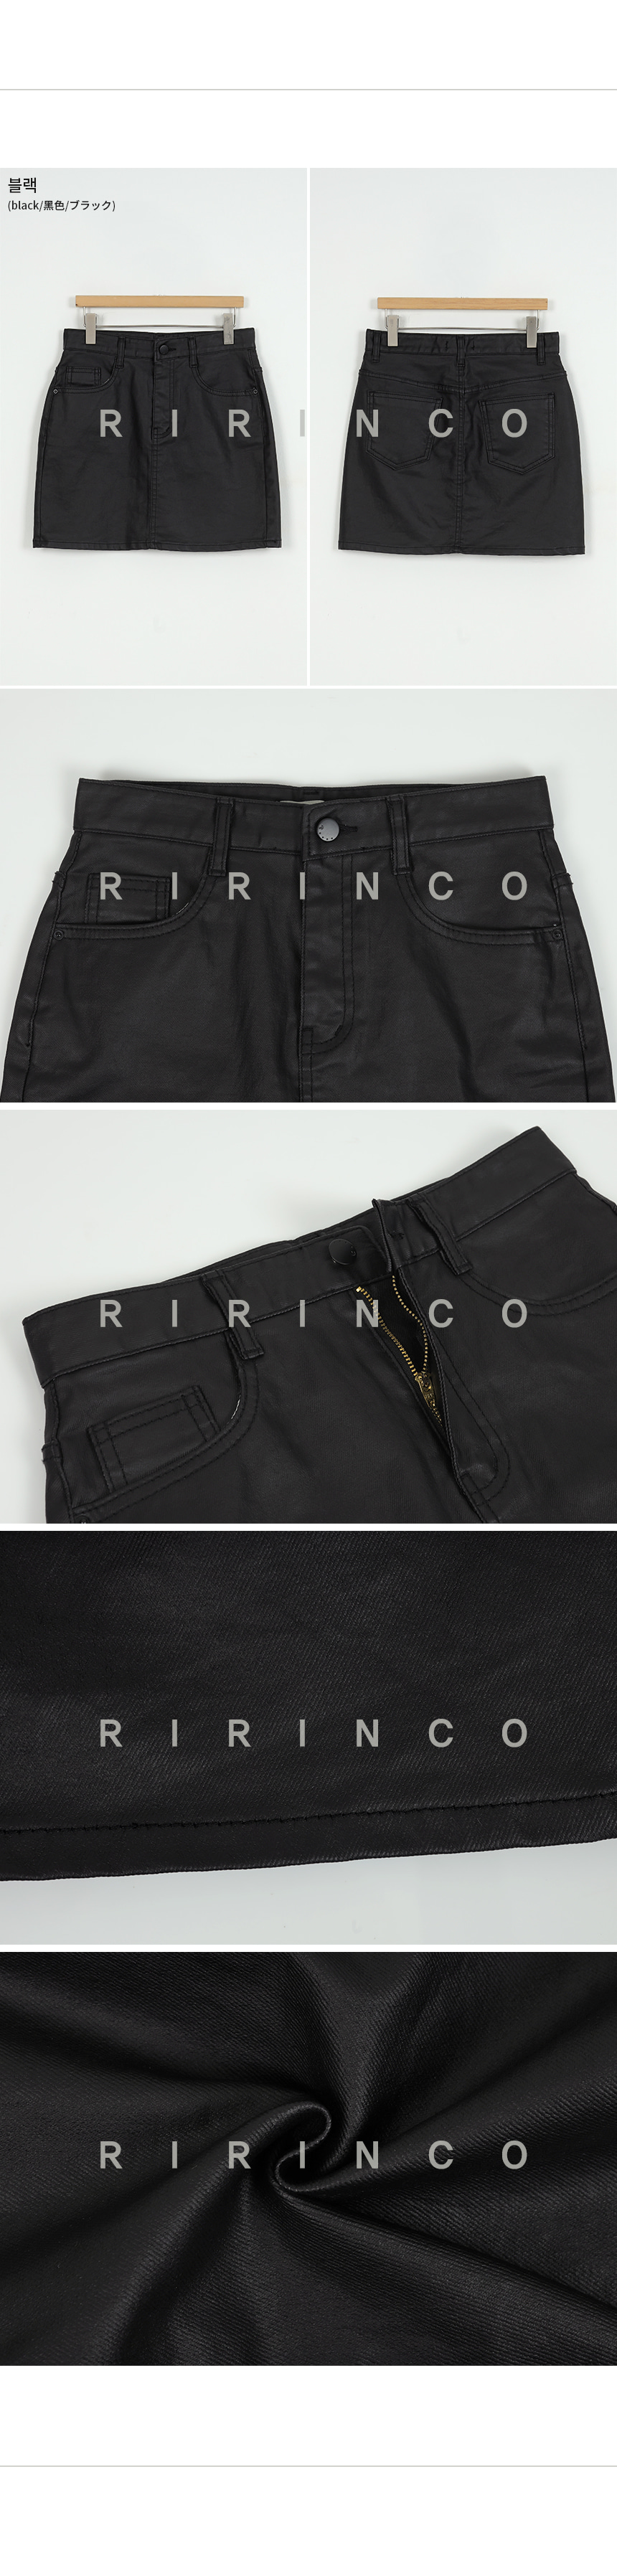 RIRINCO フェイクレザーバックポケットミニスカート